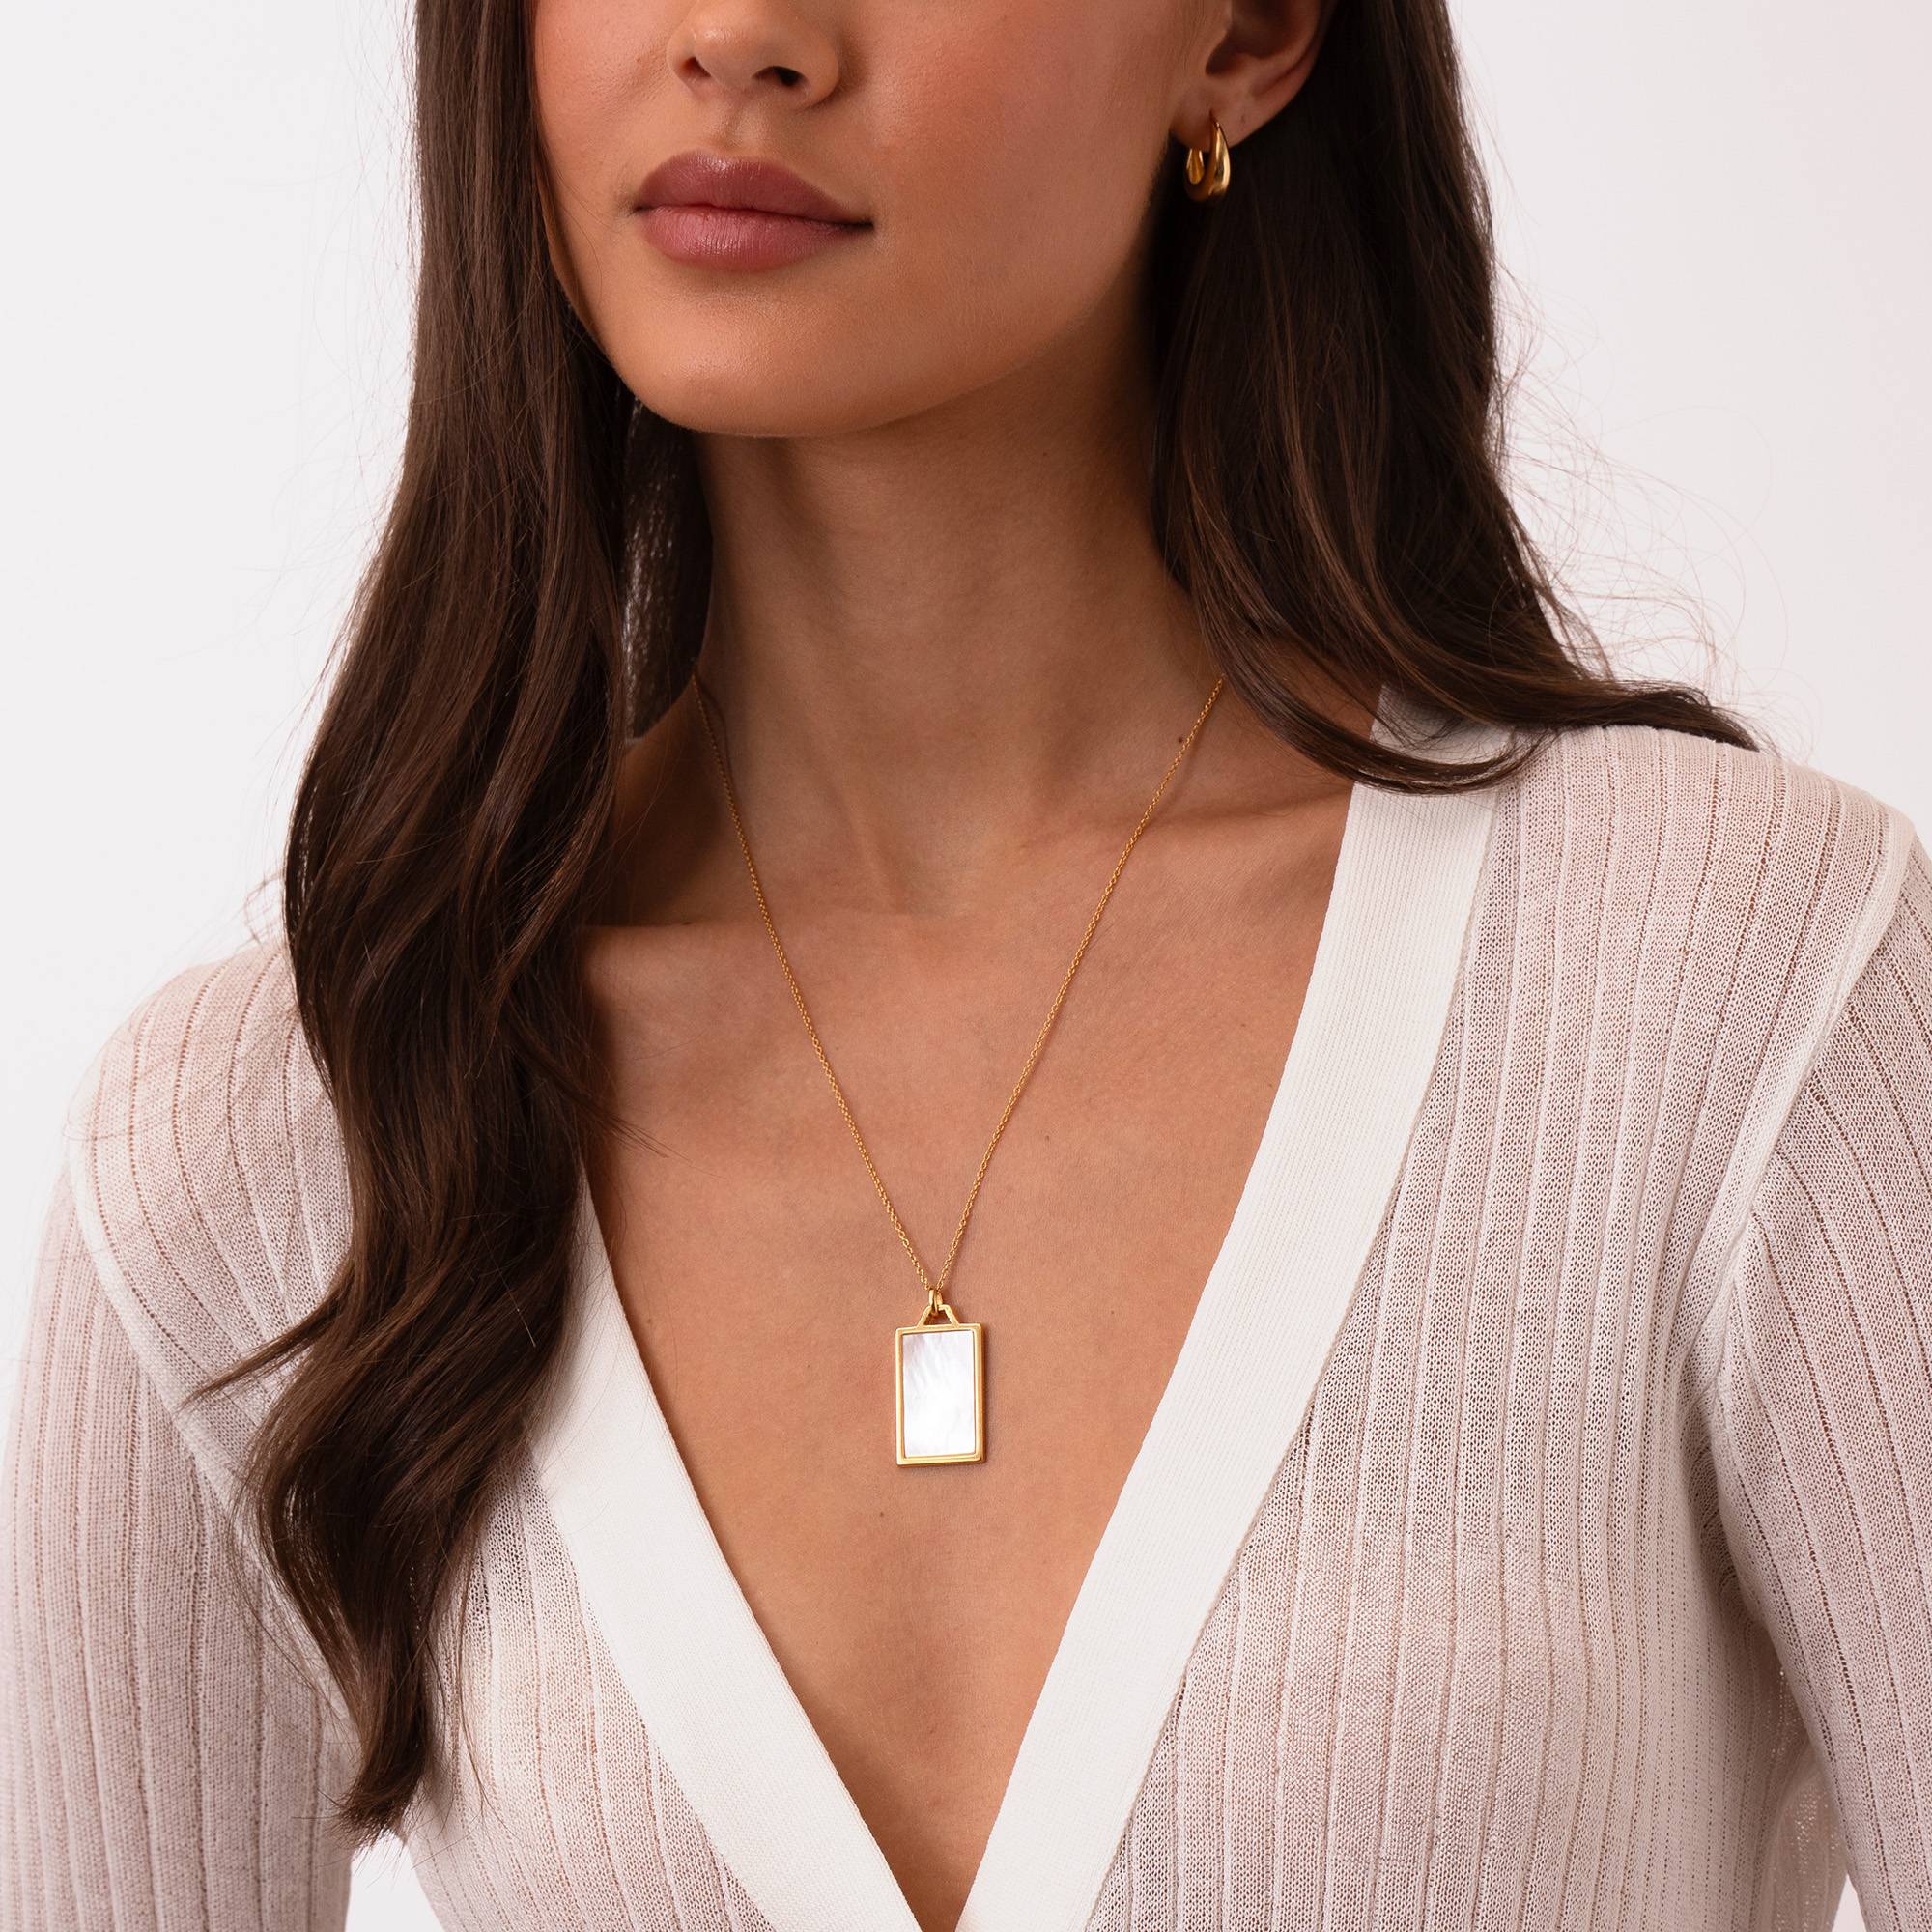 Himmlische Mutterperle personalisierte Halskette - 750er vergoldetes Silber-1 Produktfoto